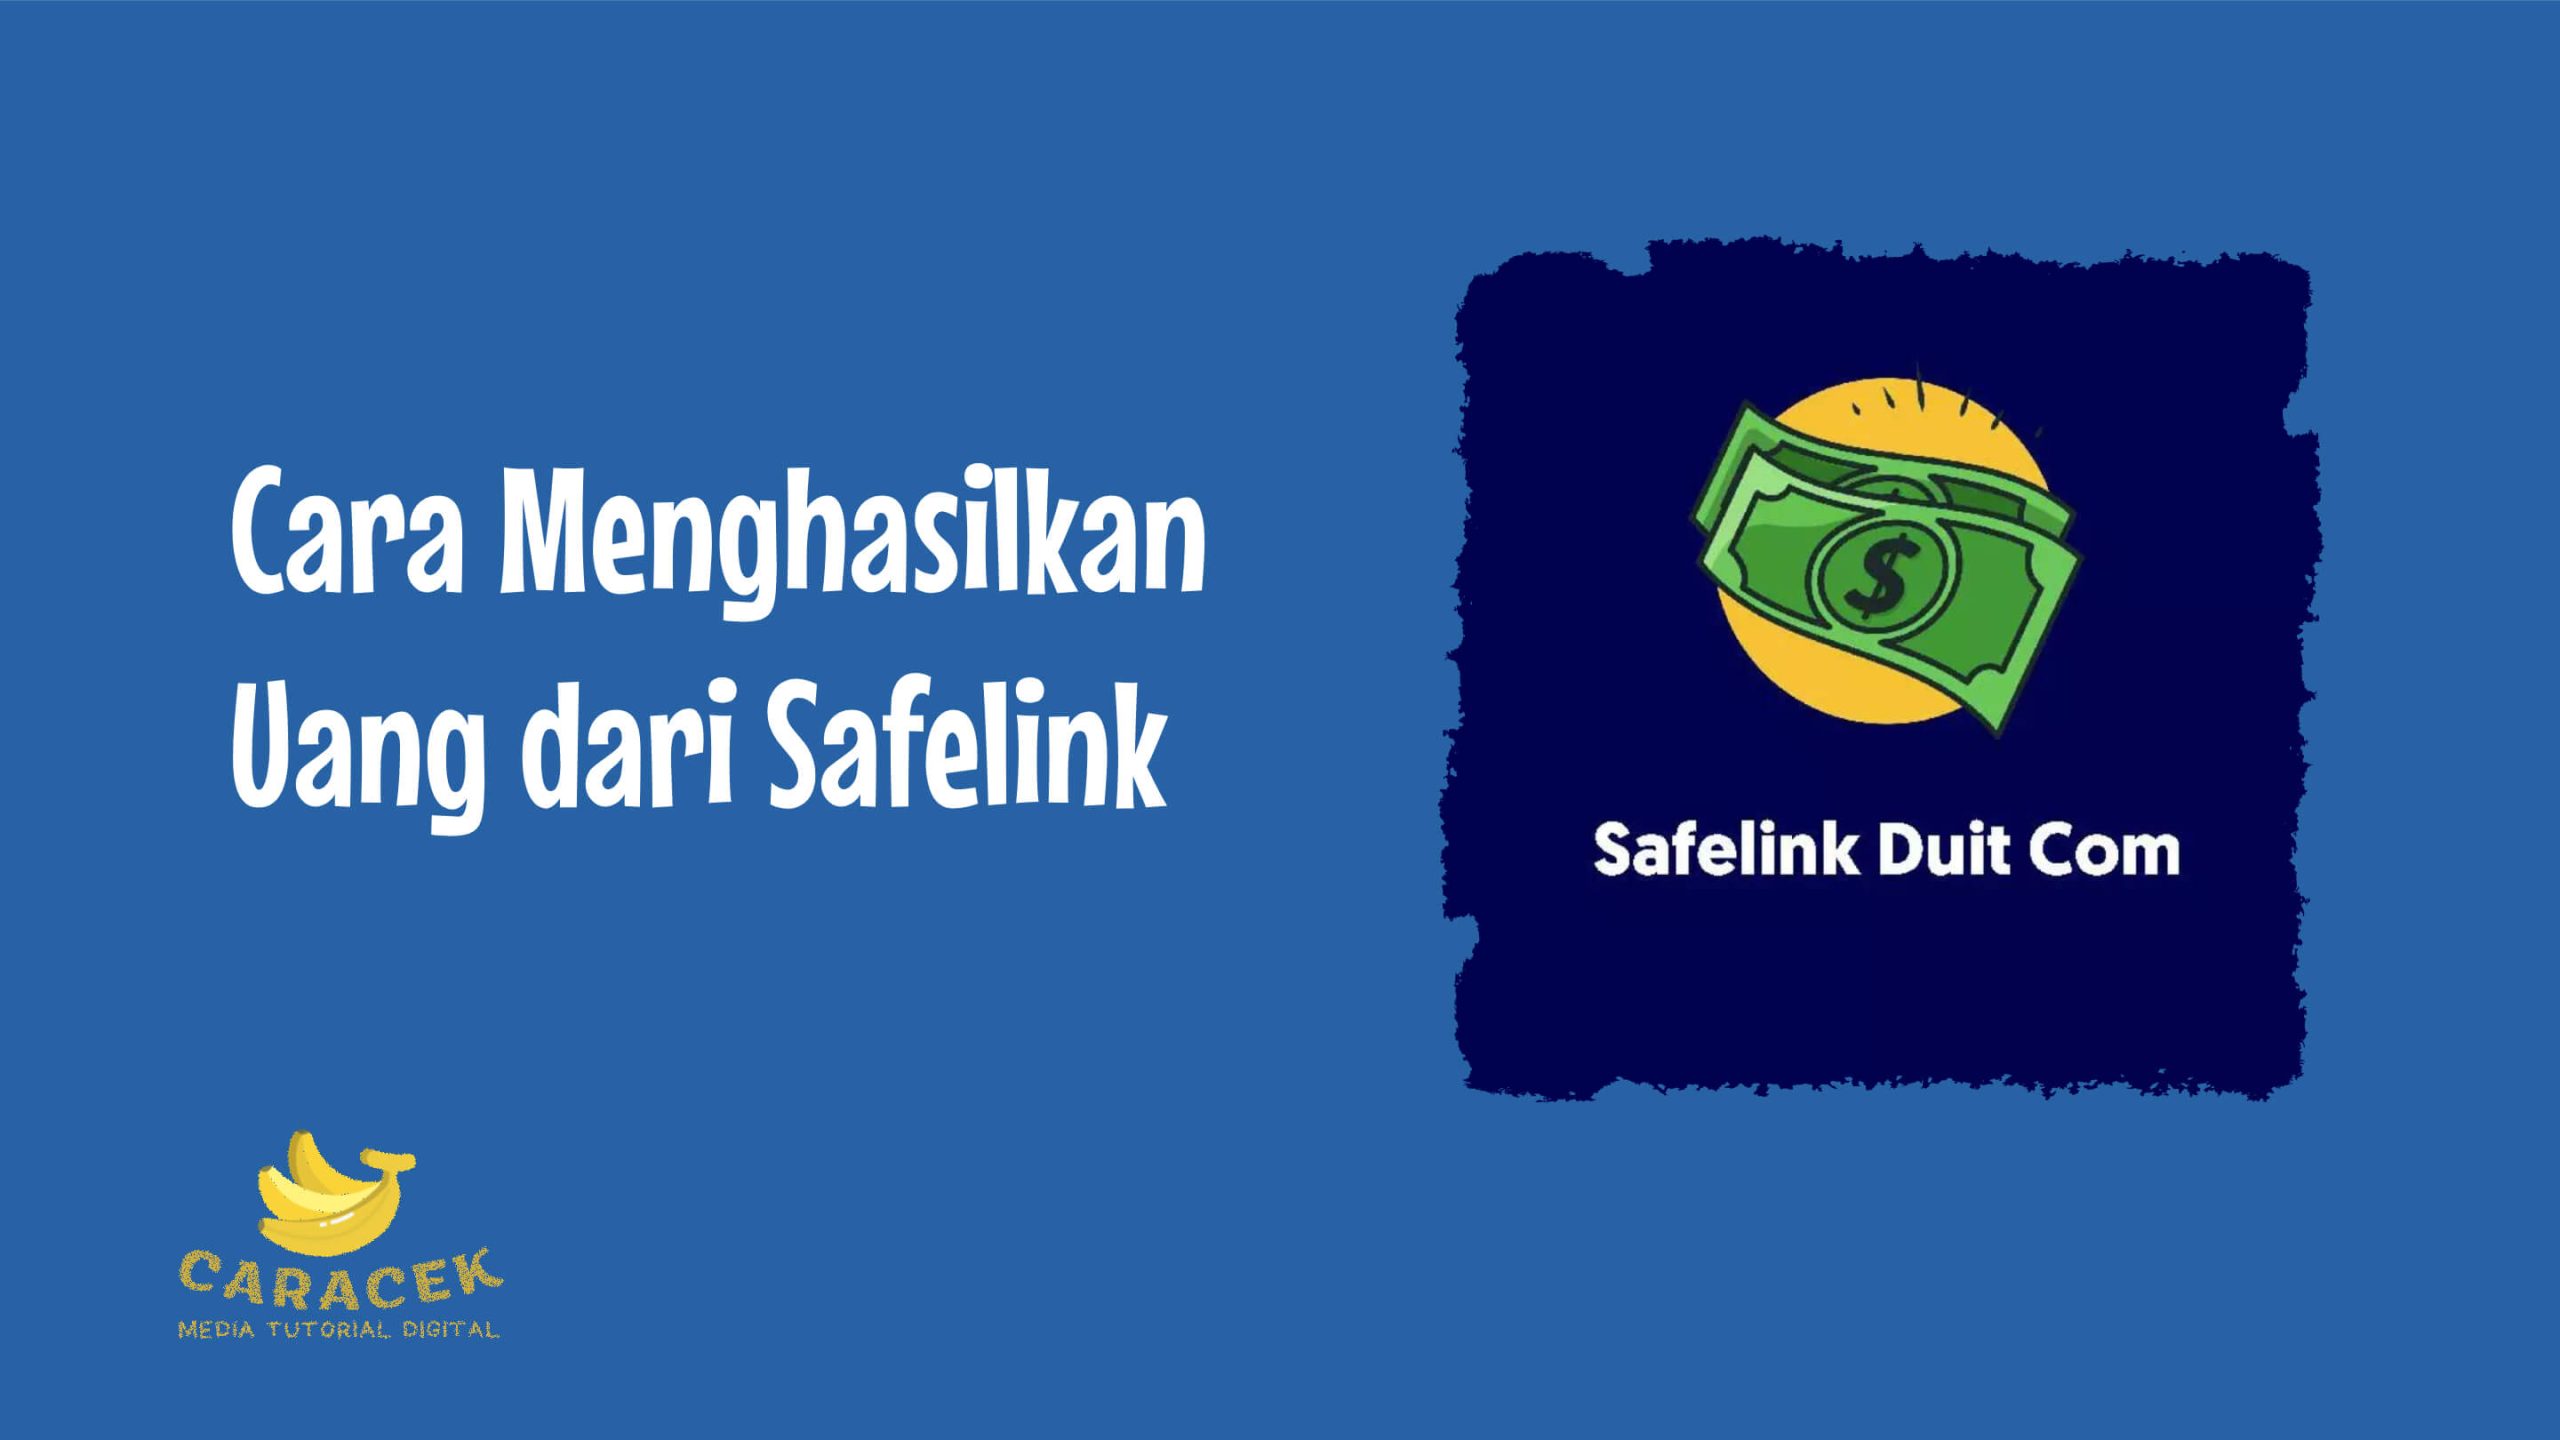 Cara Menghasilkan Uang dari Safelink